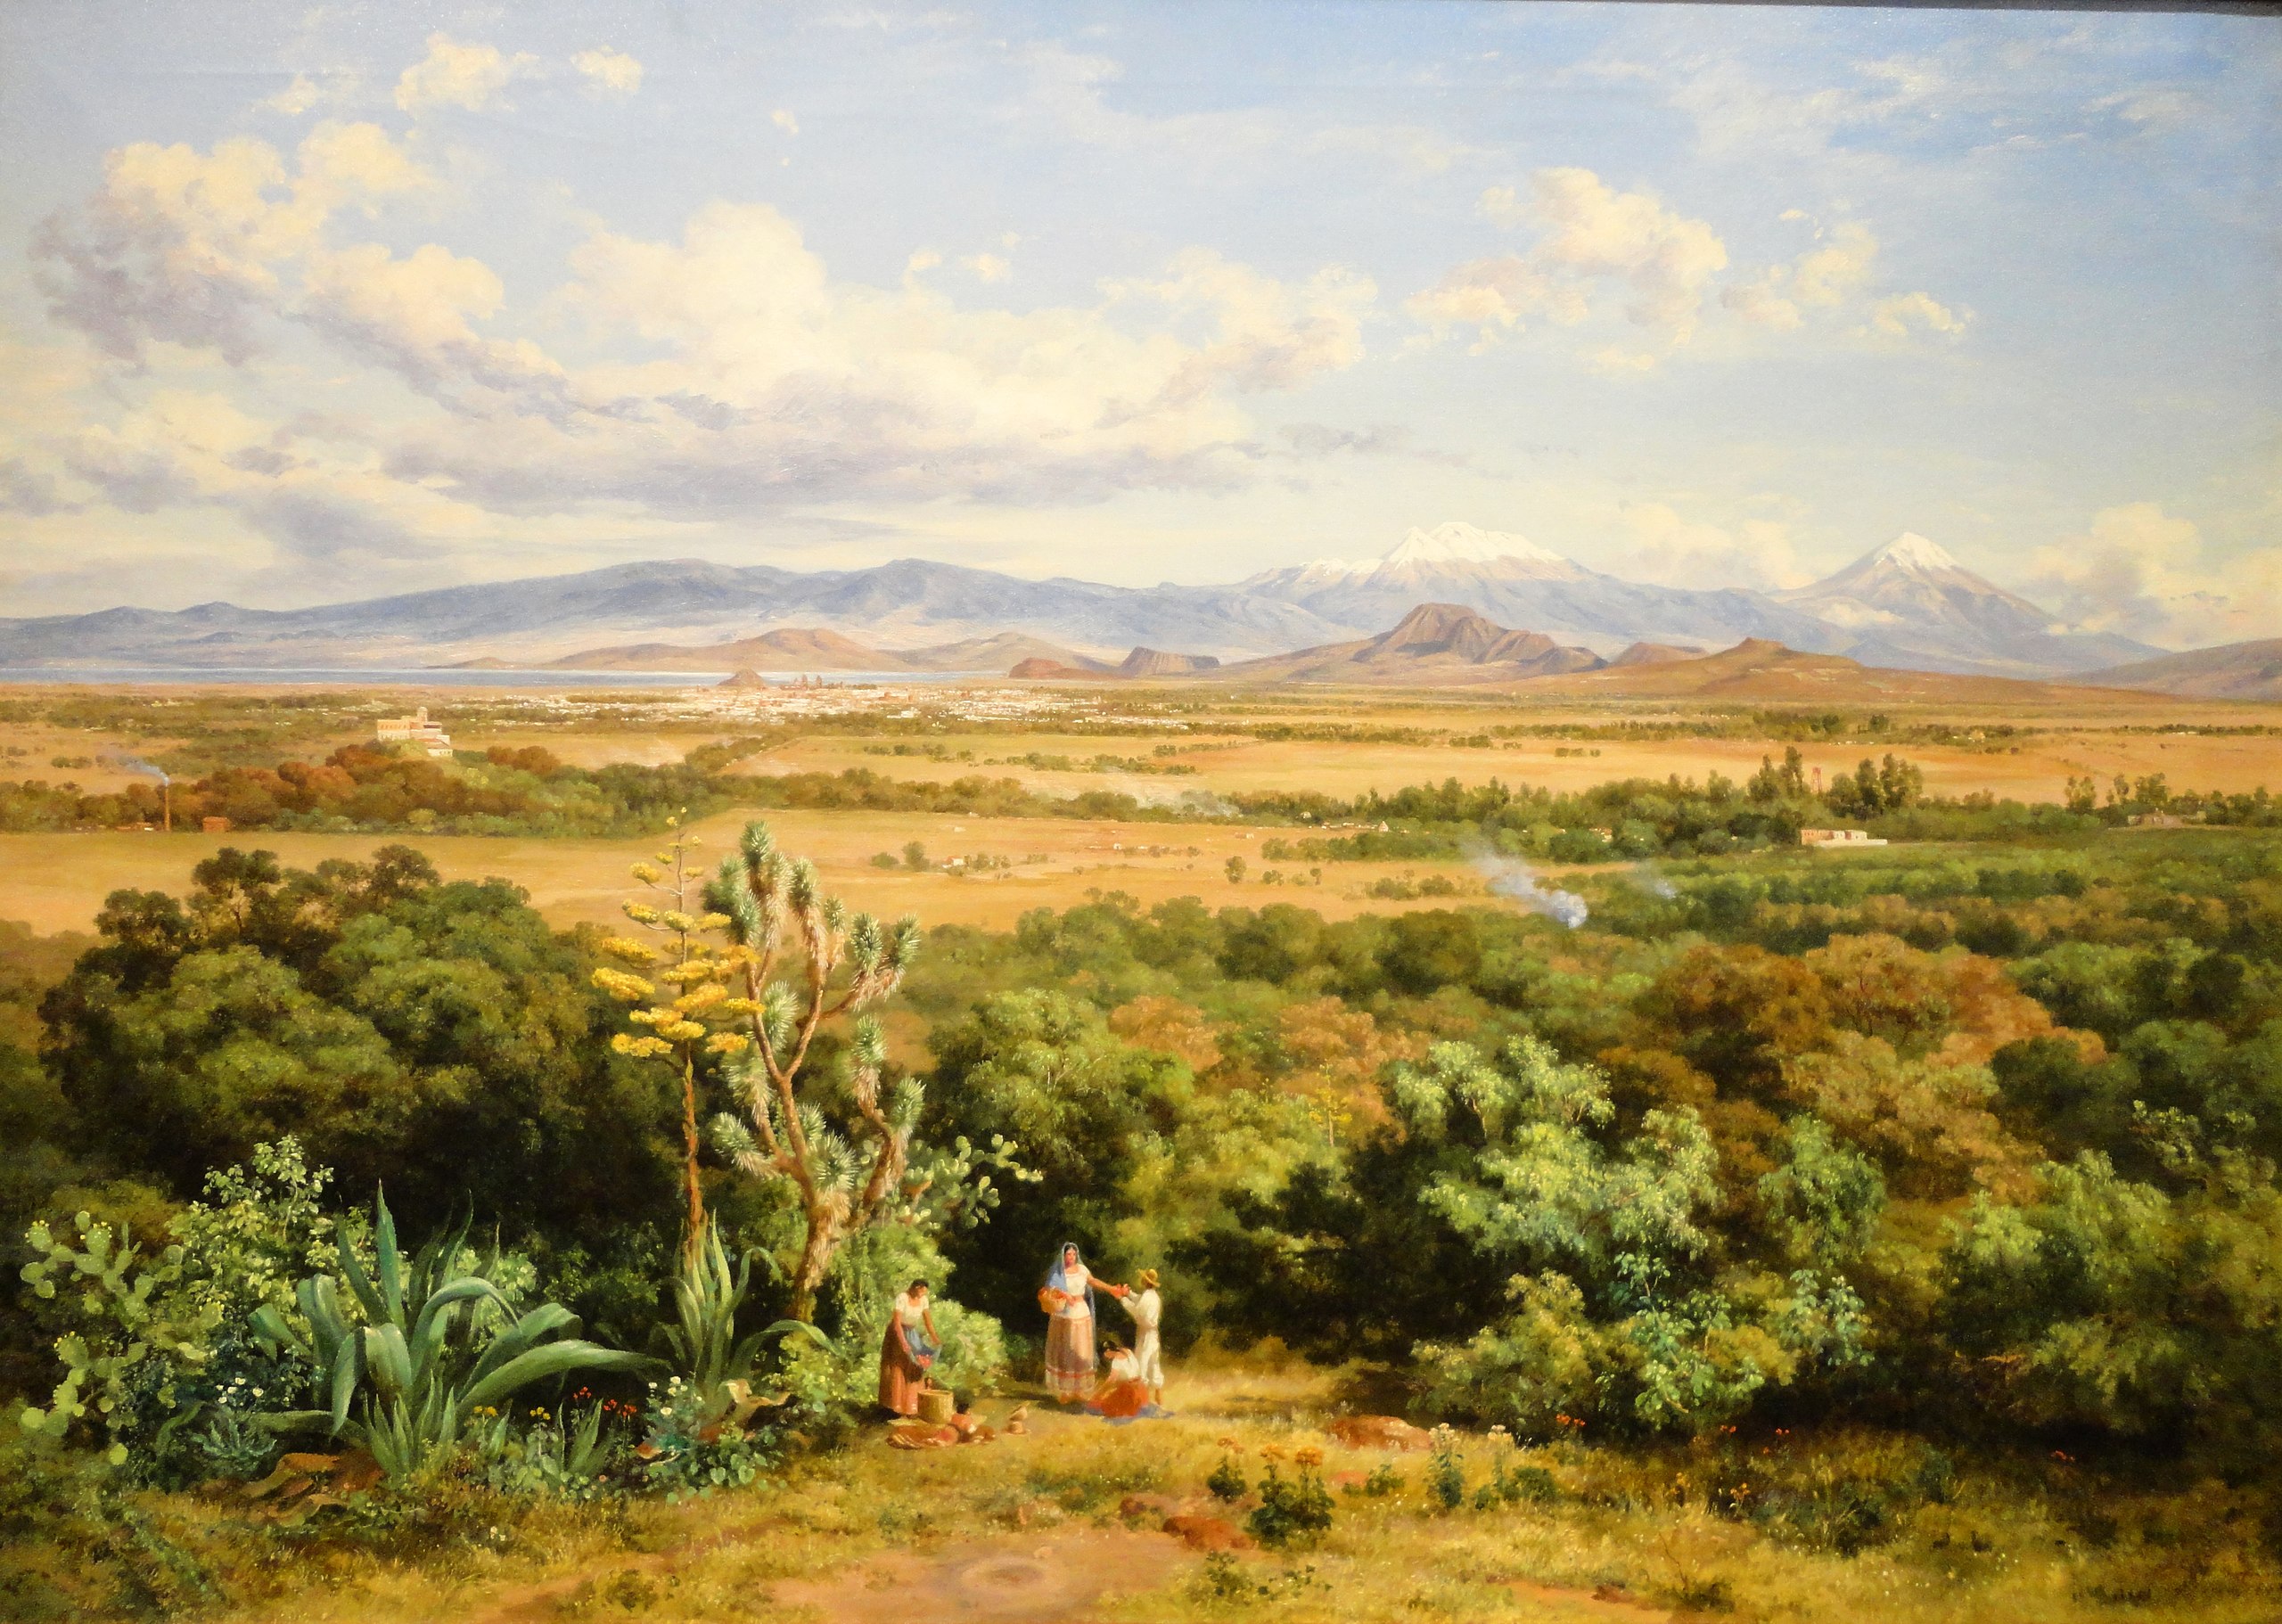 El valle de México by José María Velasco - 1888 